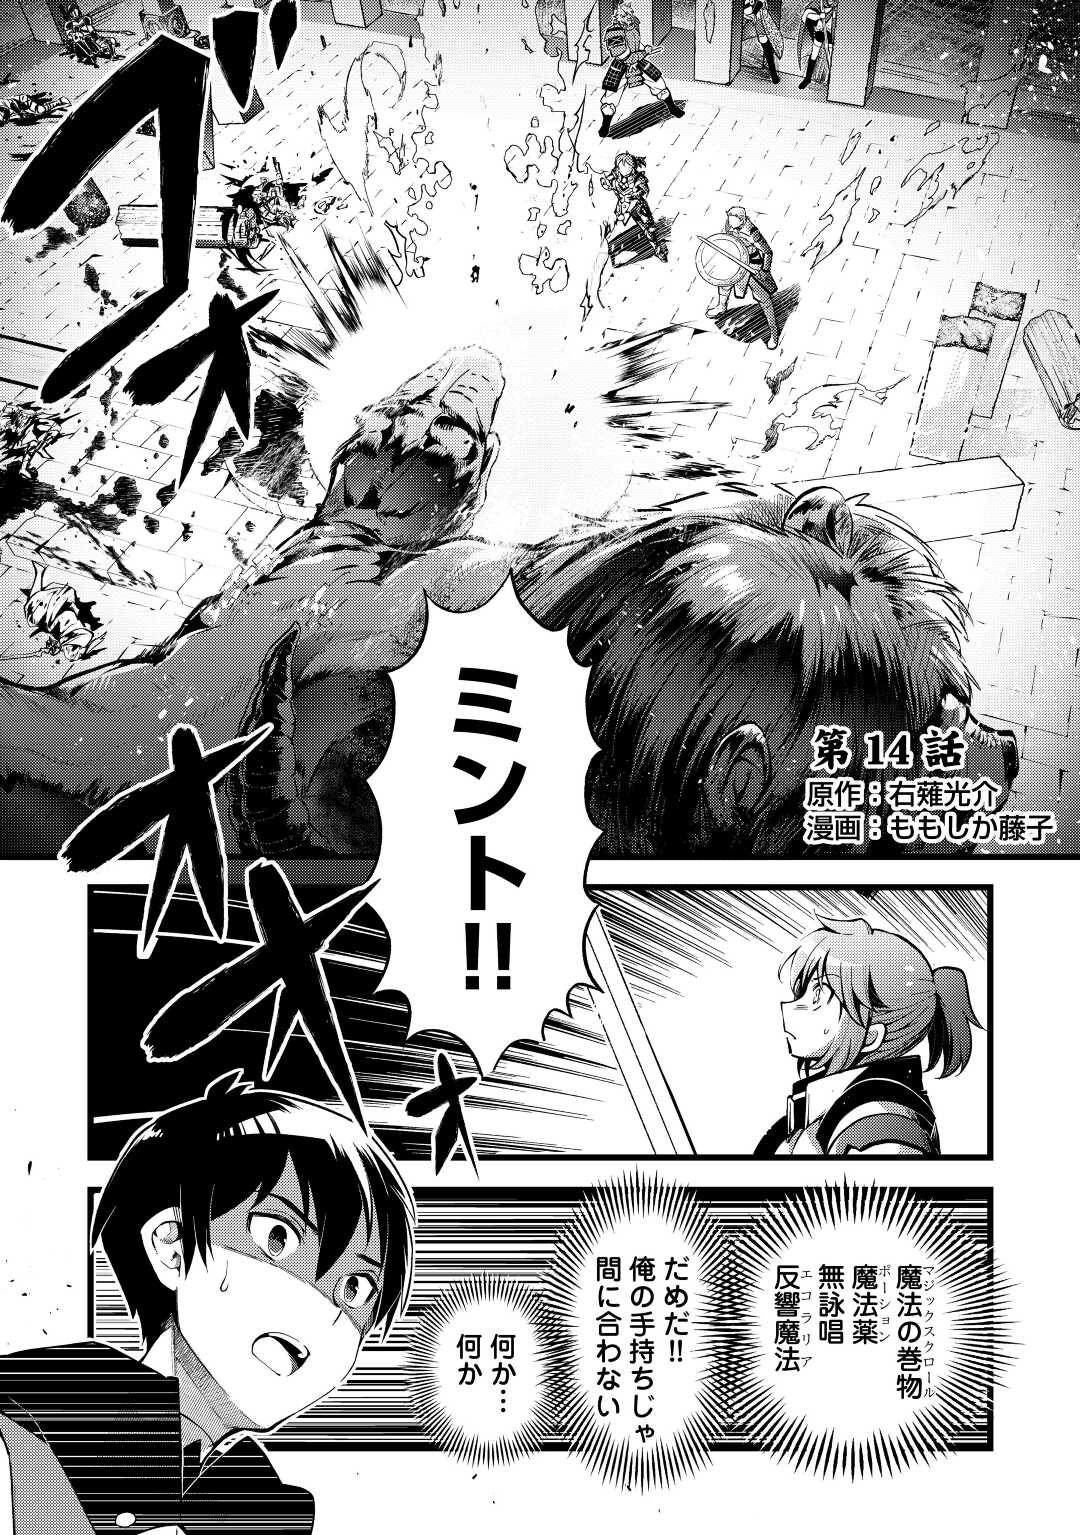 Ochikobore 1 Mahou Tsukai wa, Kyou mo Muishiki ni Cheat o Tsukau - Chapter 14 - Page 1